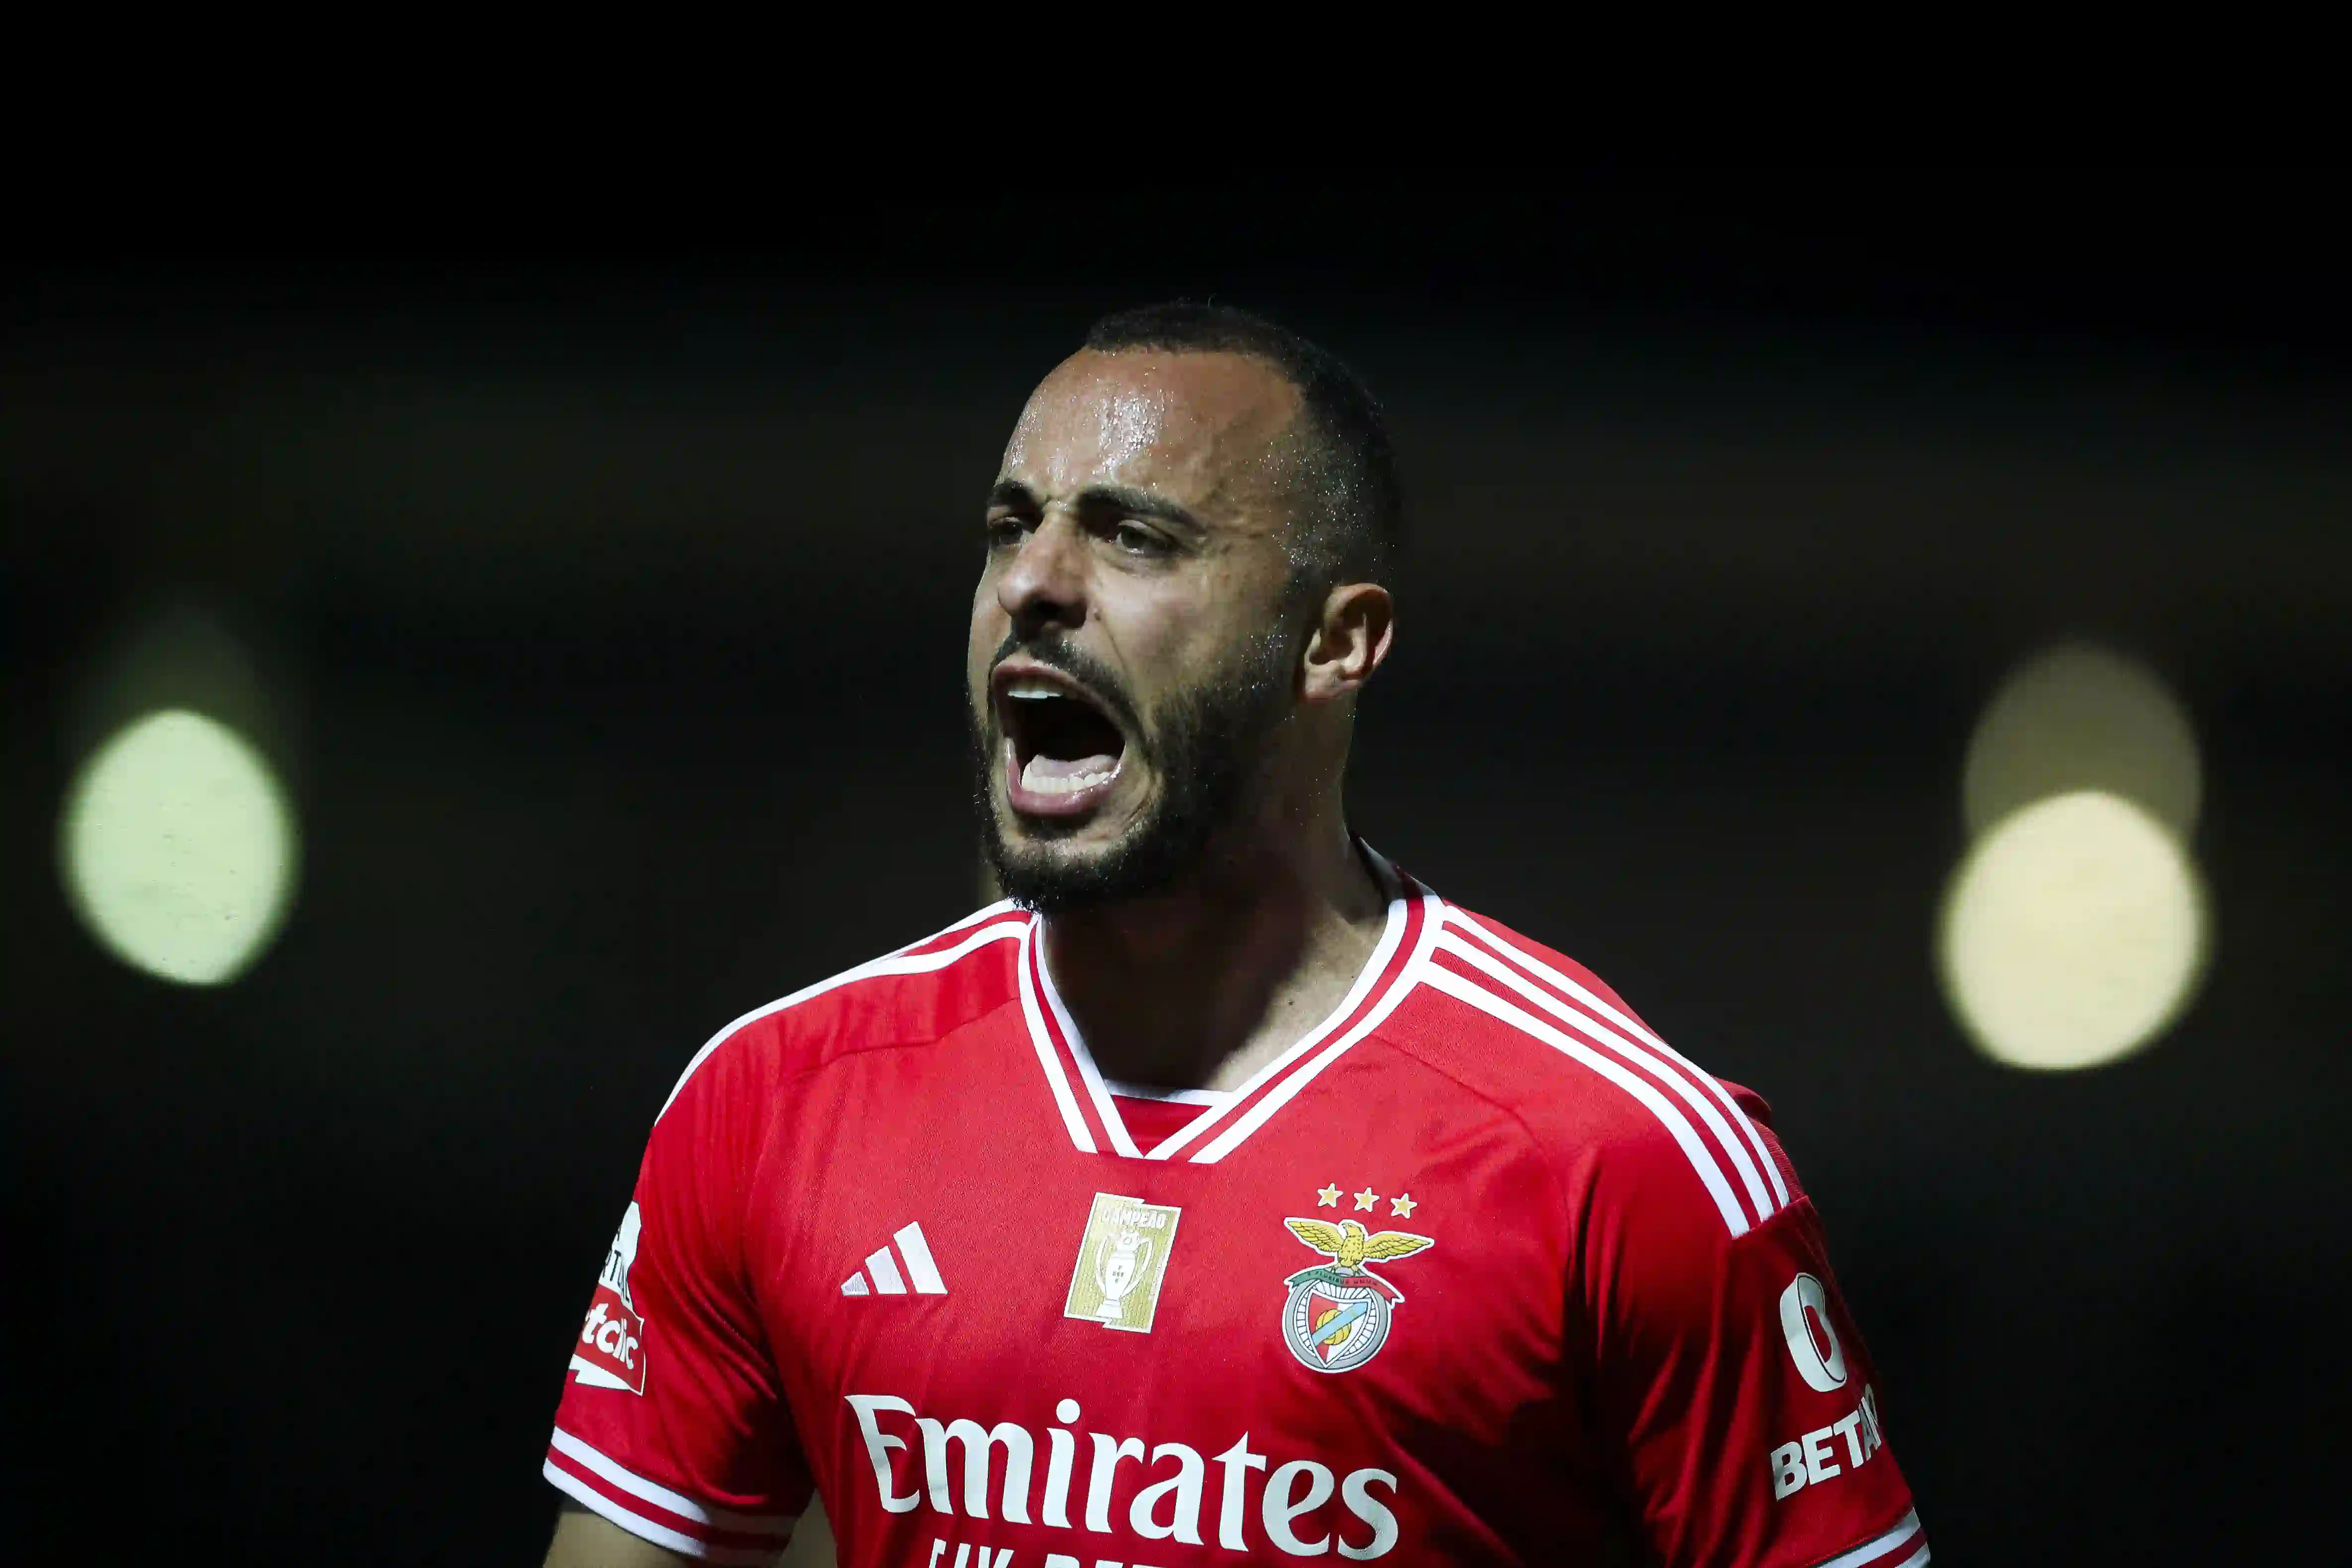 Arthur Cabral poderá estar de saída do Sport Lisboa e Benfica, sendo agora tema na imprensa nacional 